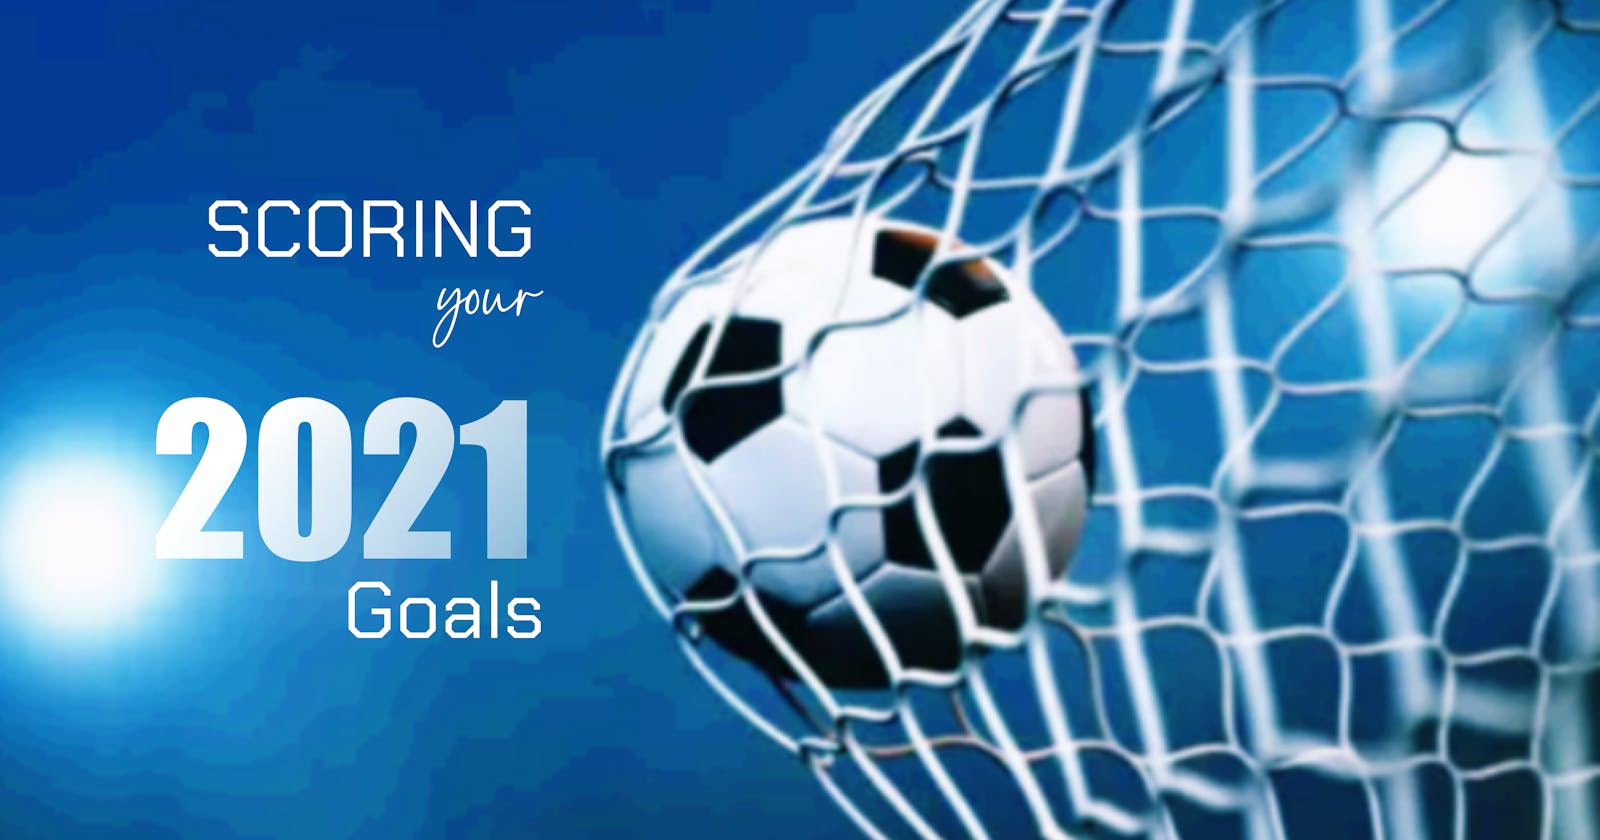 Scoring your 2021 goals.